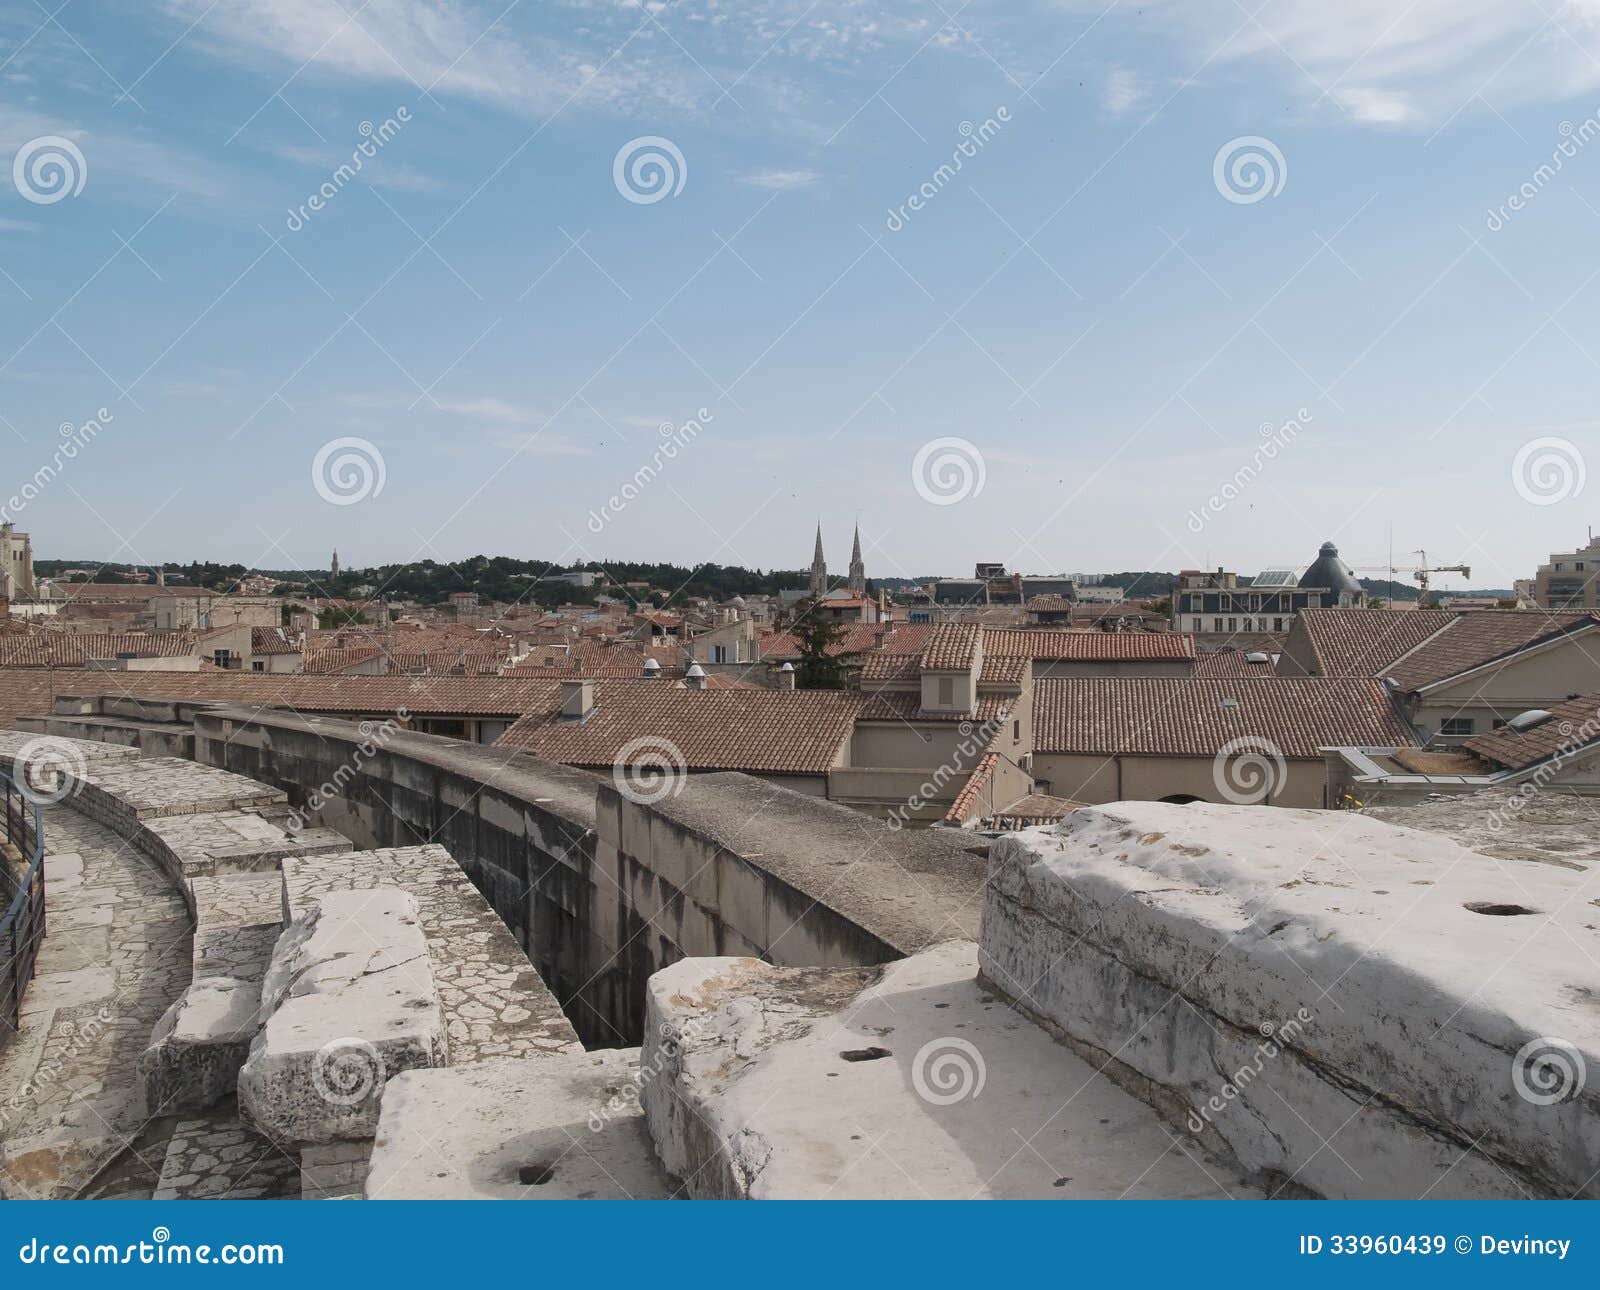 Amphitheatre Arles stockbild. Bild von rhone, himmel - 33960439